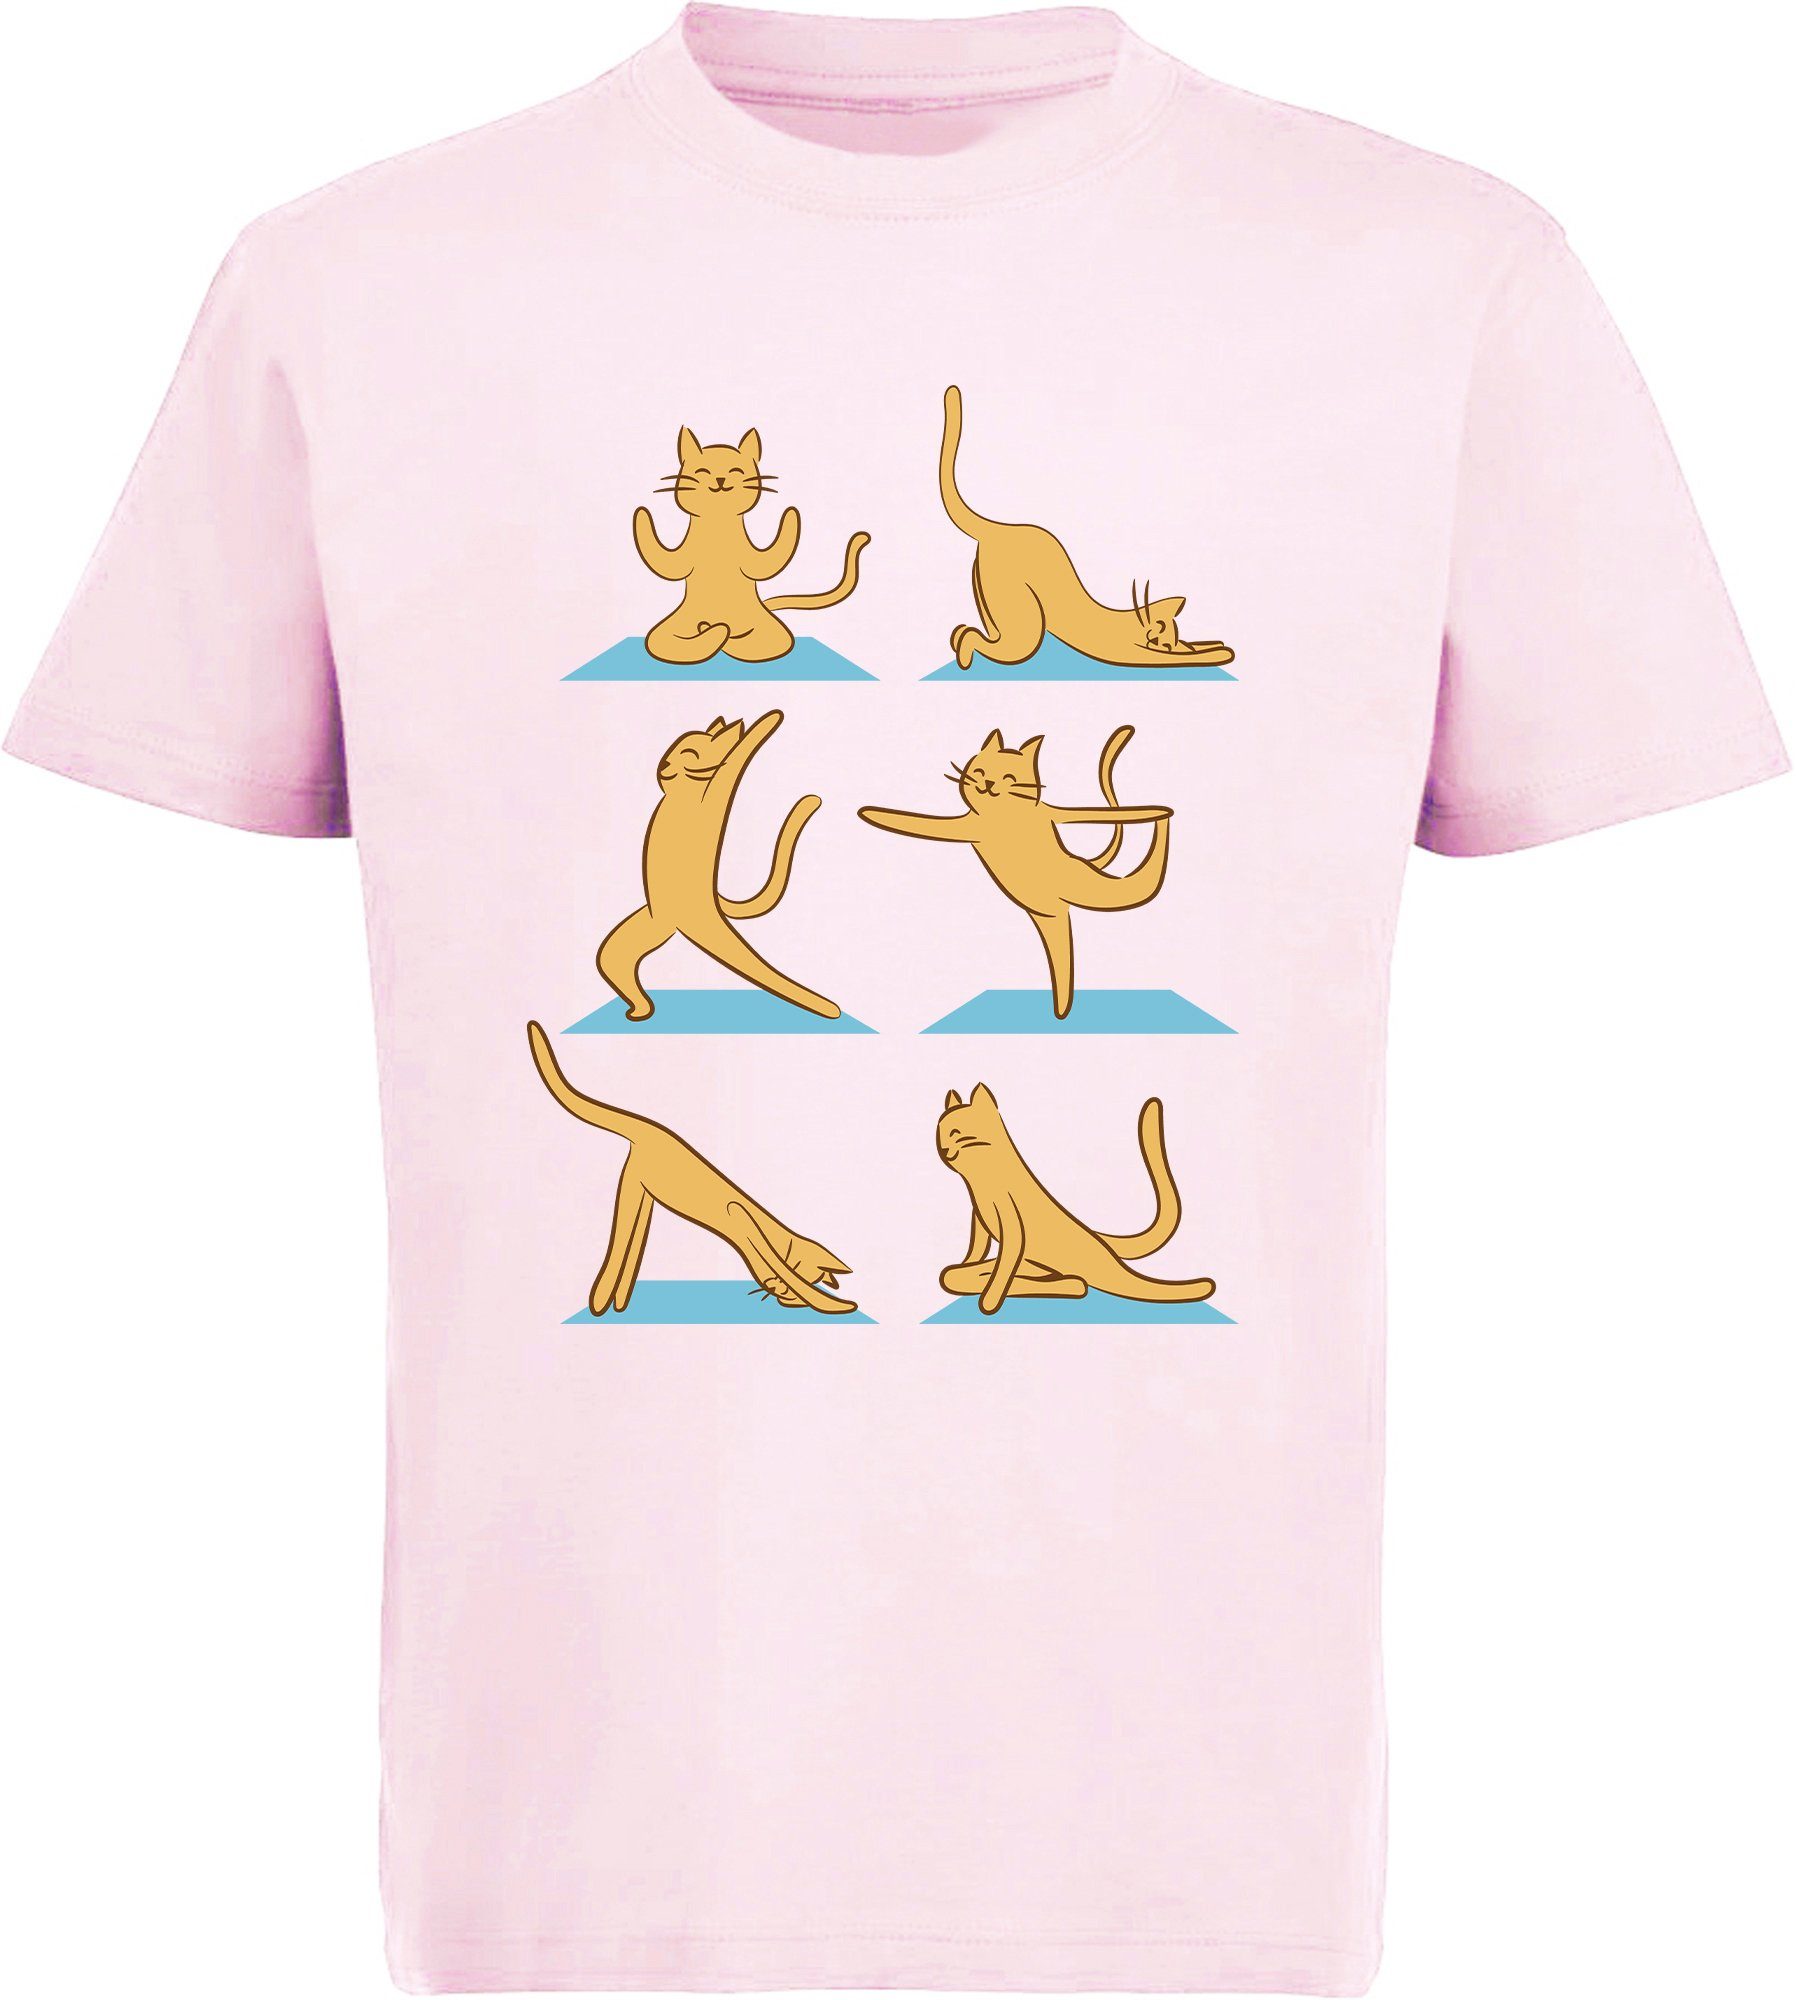 T-Shirt MyDesign24 i131 weiß, schwarz, Katze rot, Mädchen Yoga rosa, Baumwollshirt bedrucktes mit Aufdruck, Print-Shirt